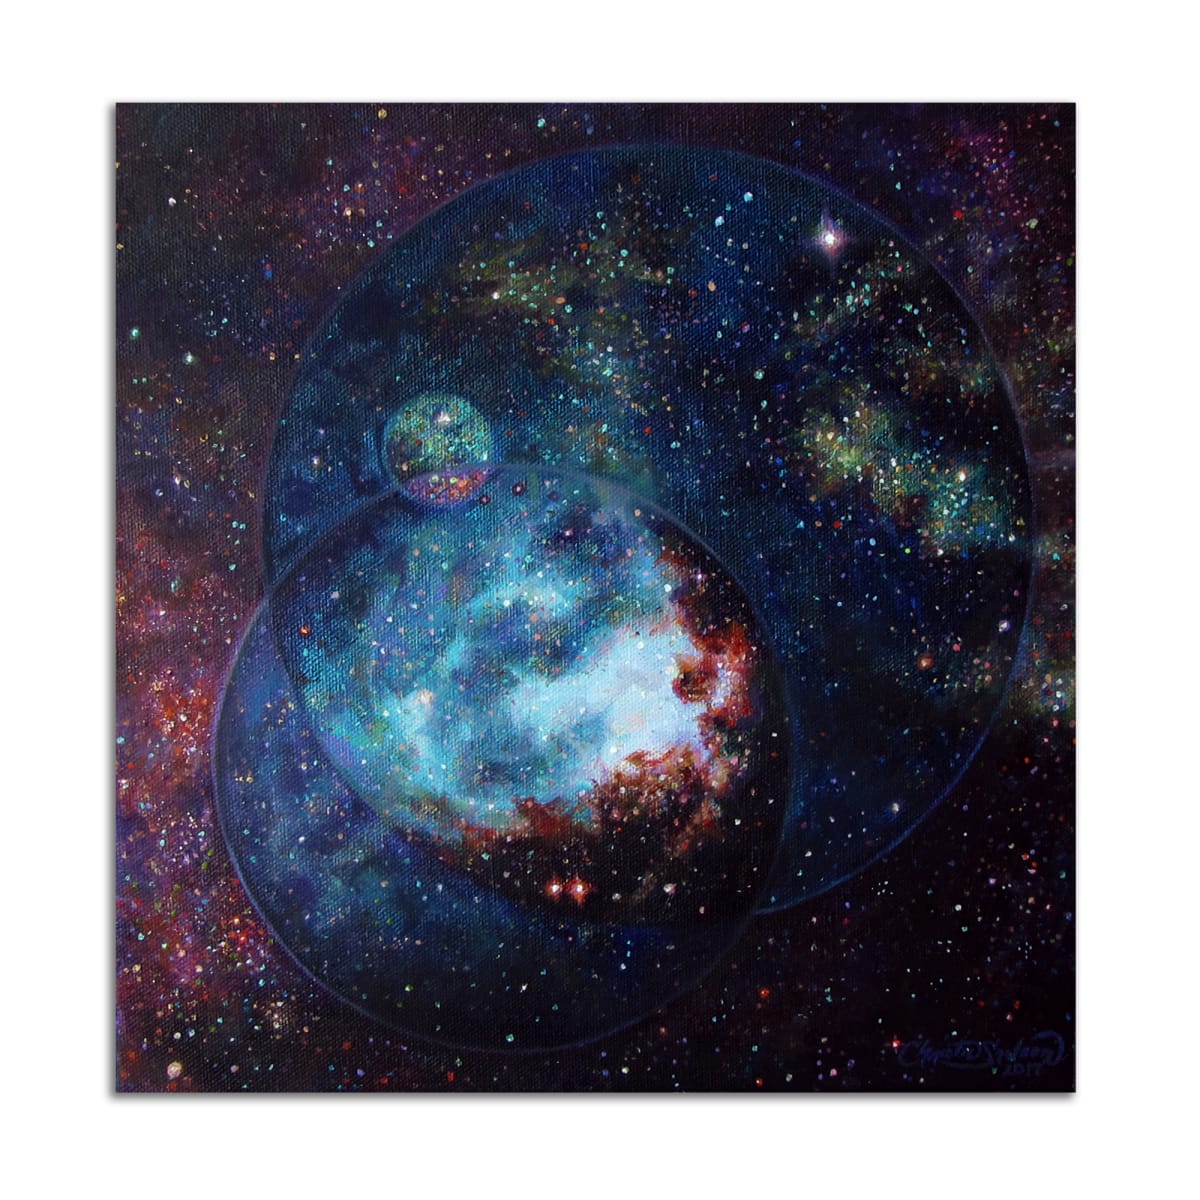 8: Carina Nebula by Christie Snelson 